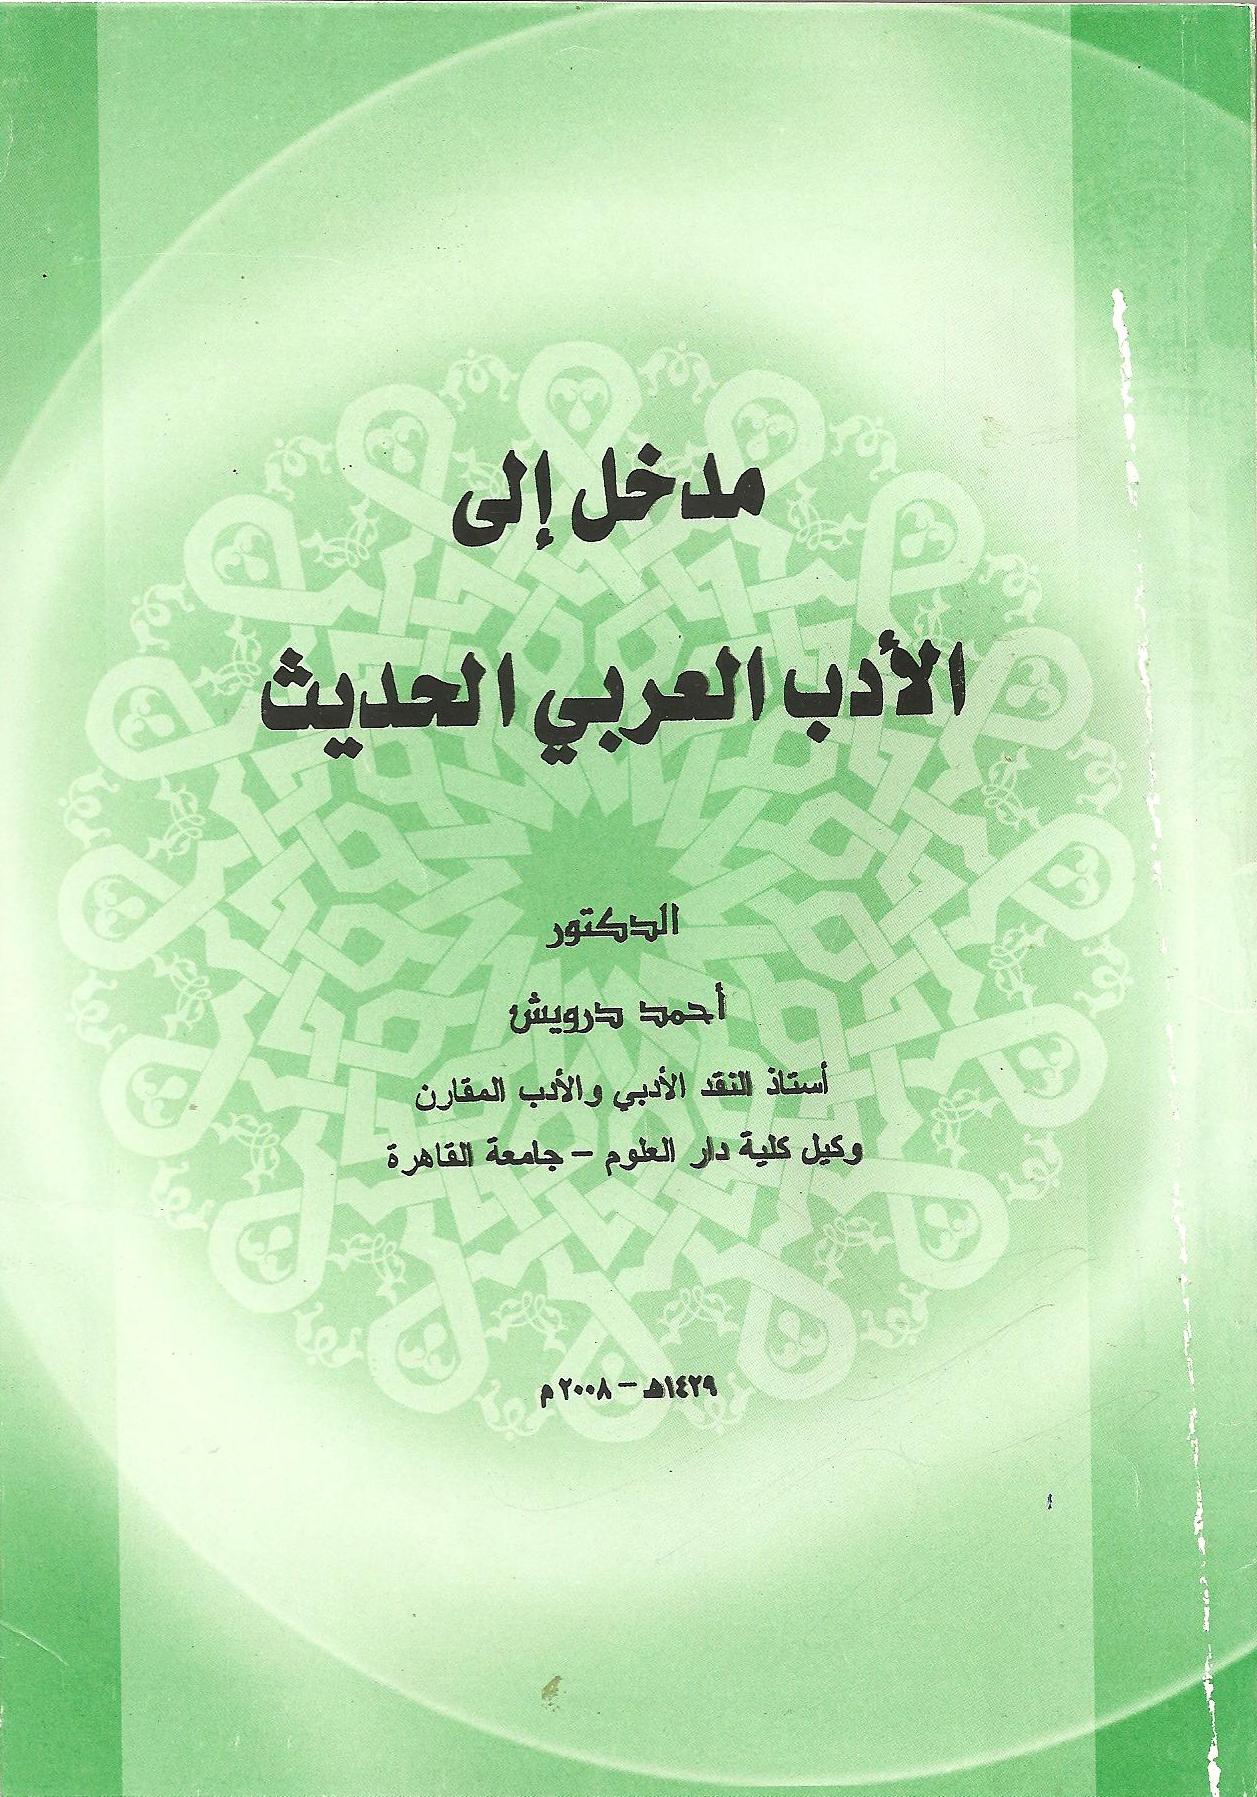  تحميل كتاب مدخل إلى الأدب العربي الحديث pdf أحمد درويش